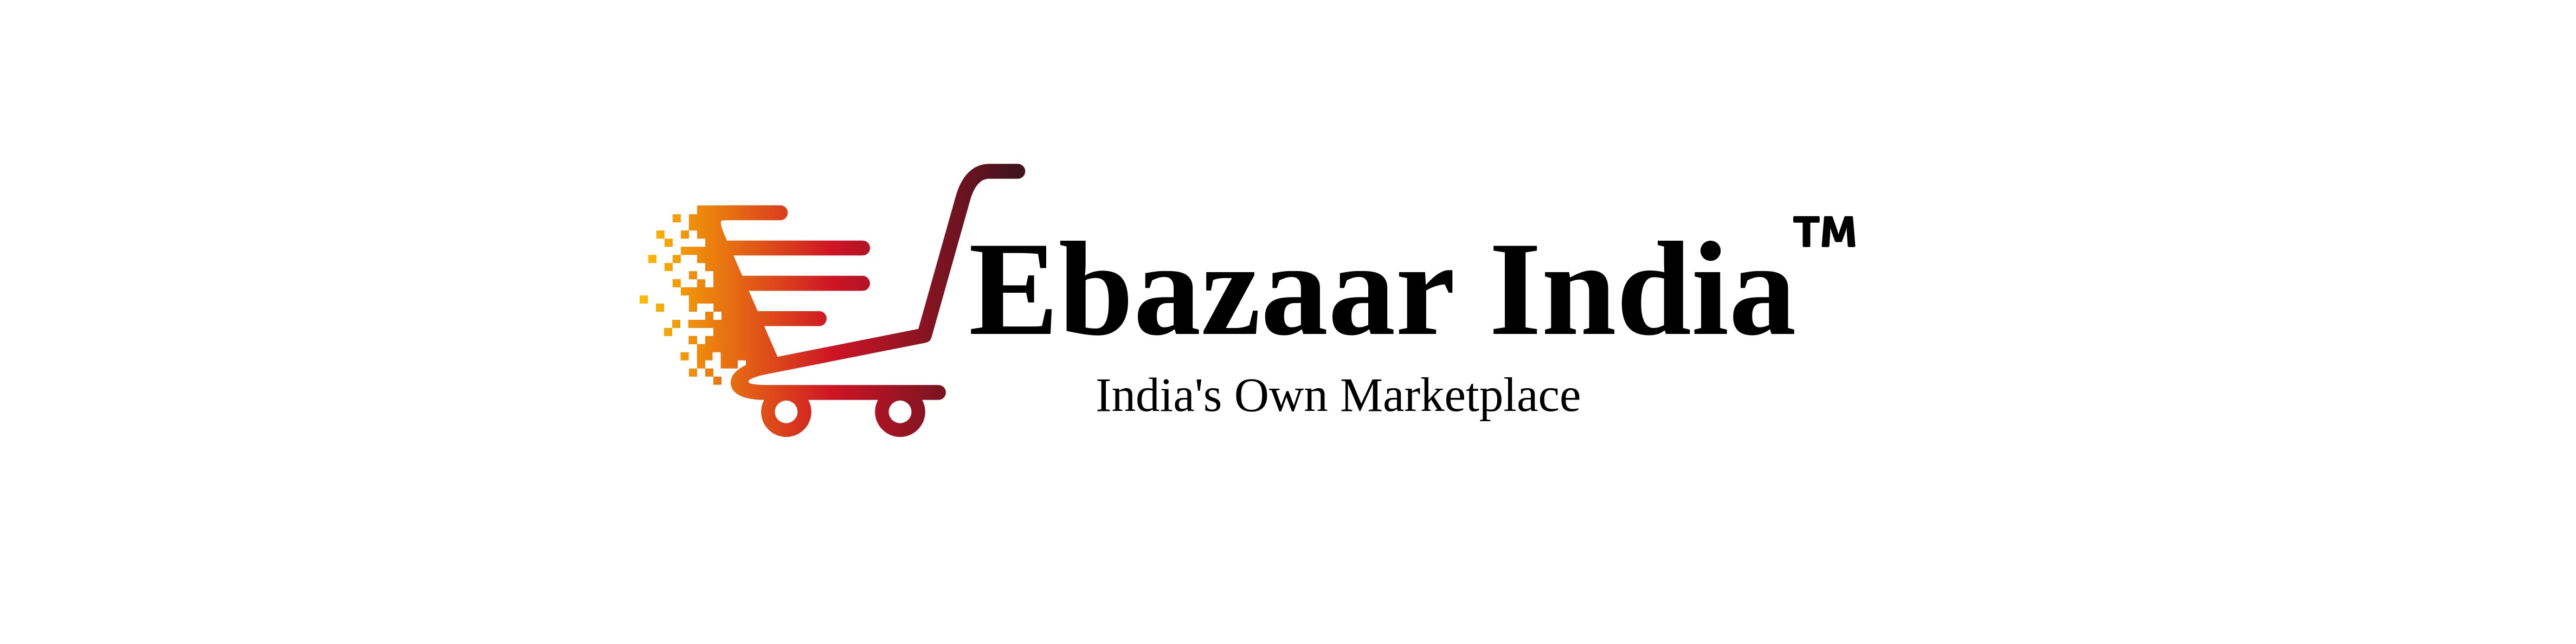 Ebazaar India